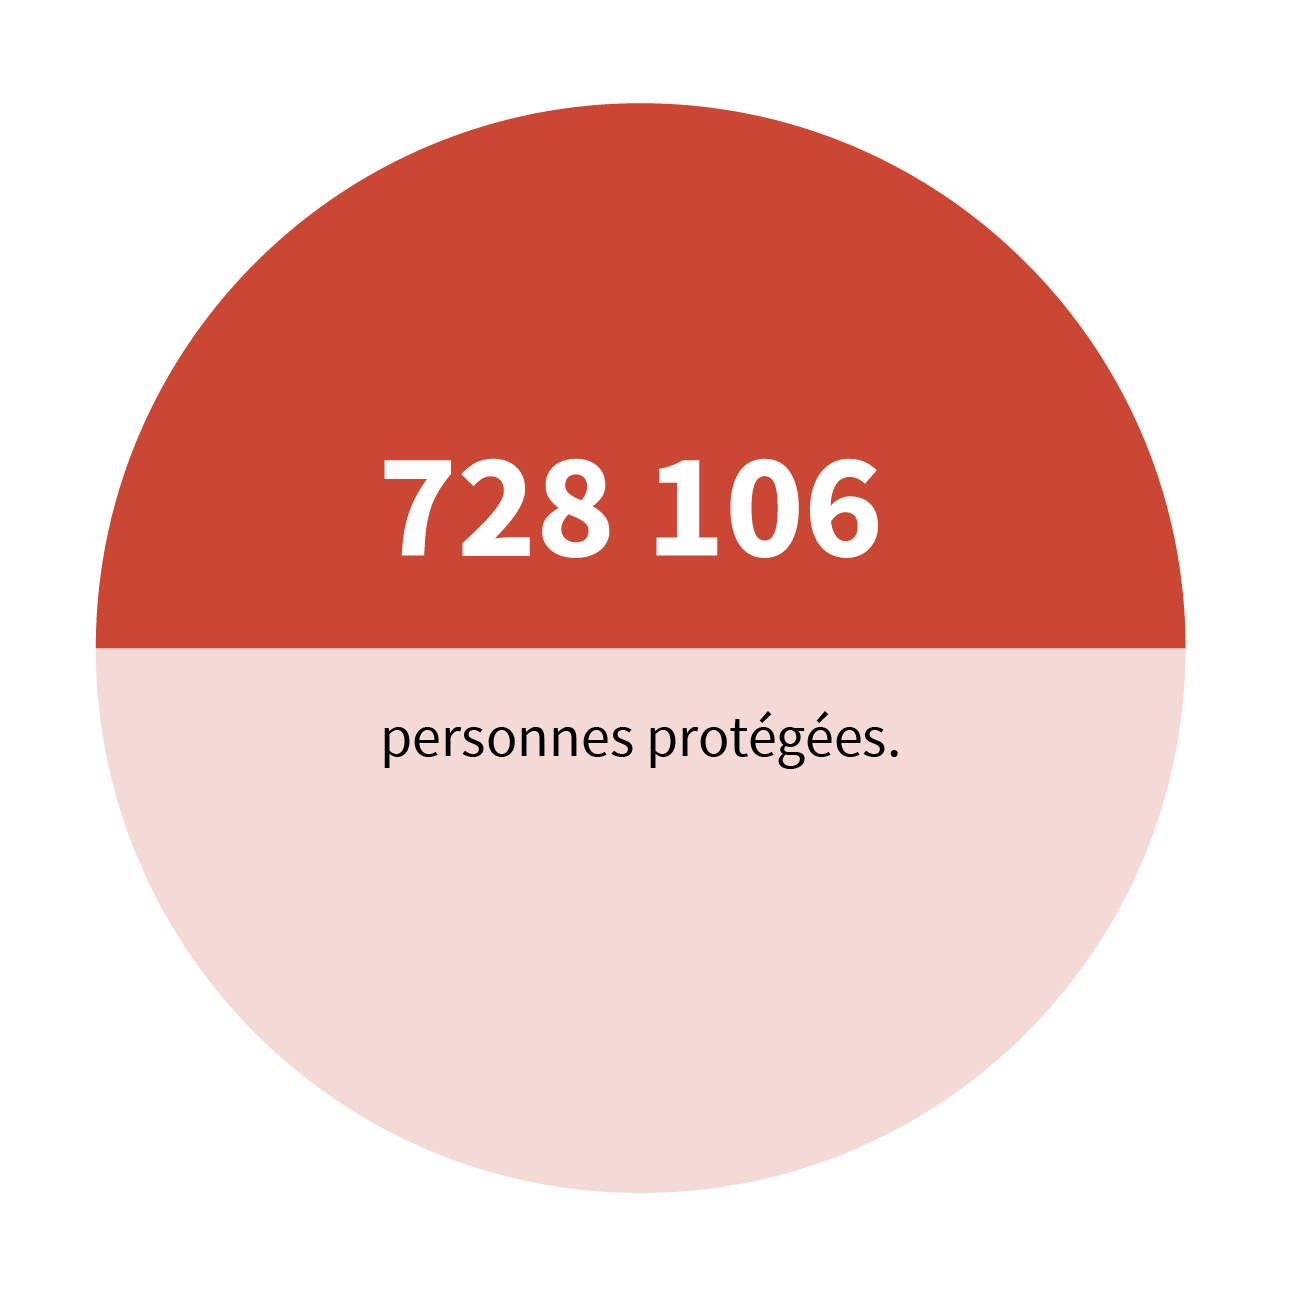 728 106 personnes protégées